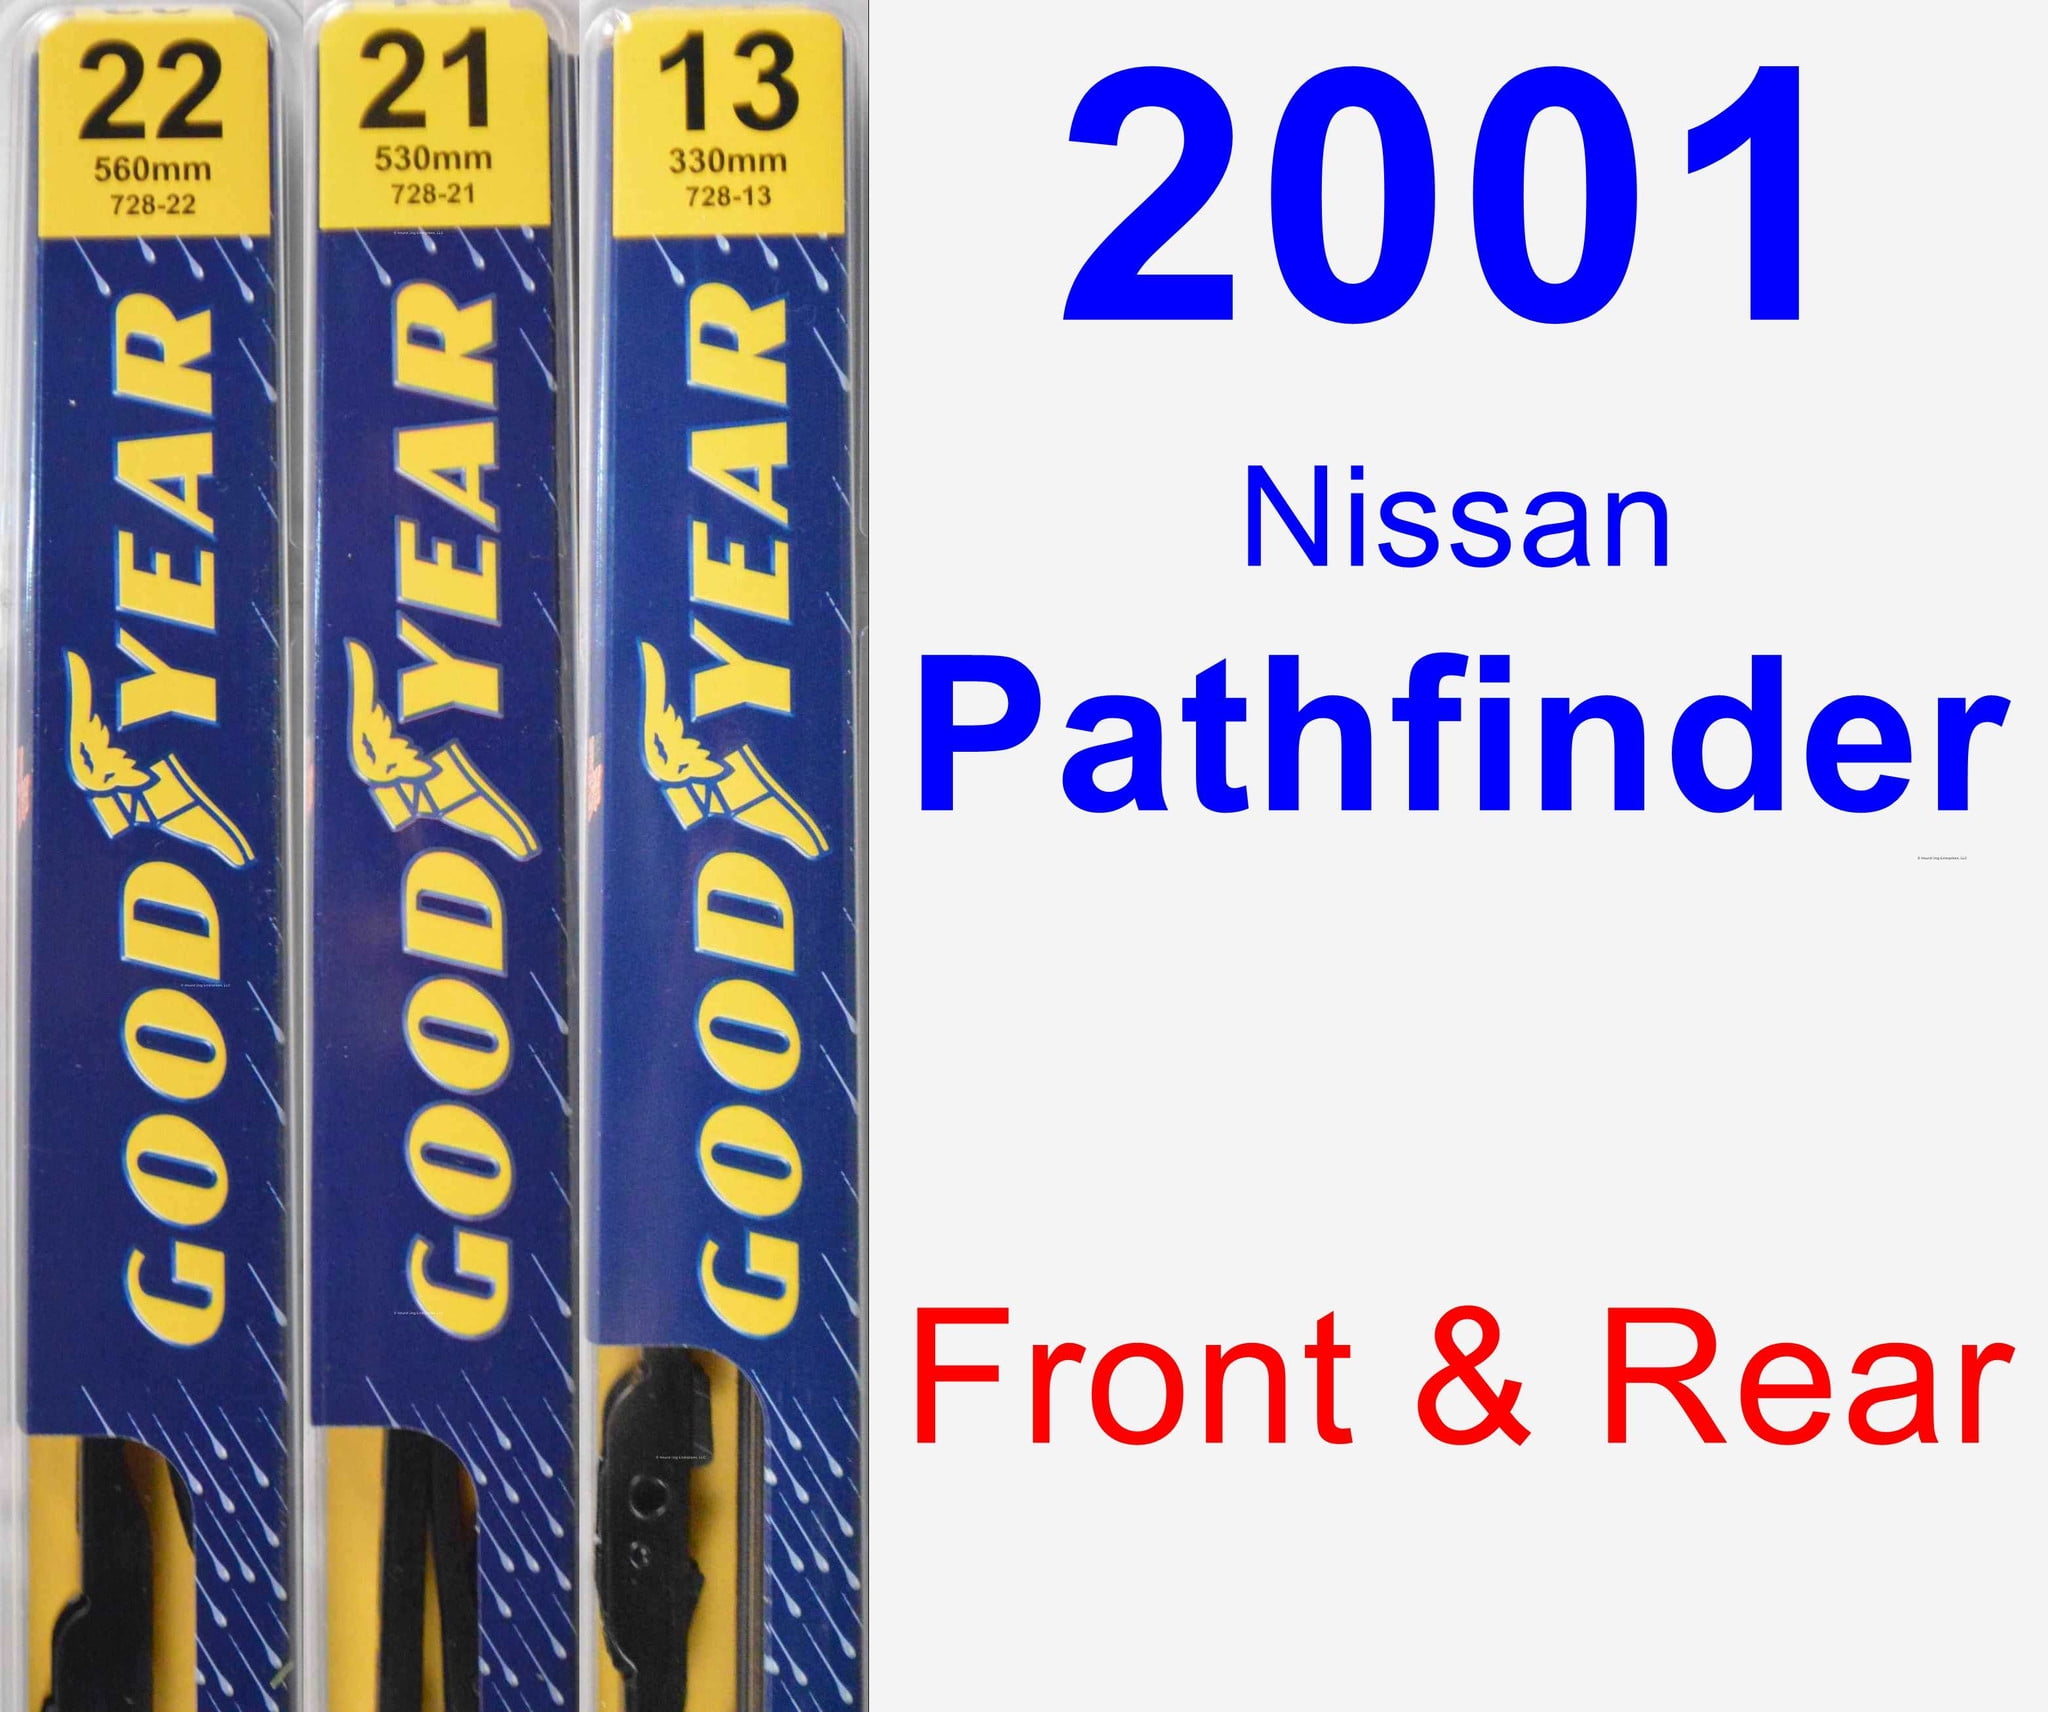 2001 Nissan Pathfinder Rear Wiper Blade - Premium 